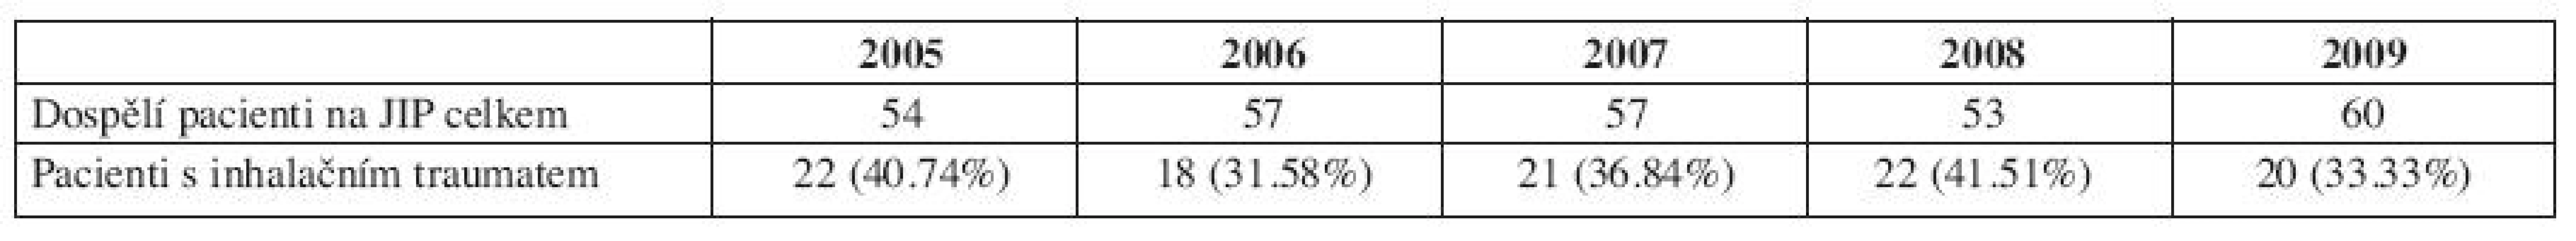 Podíl celkově přijatých dospělých pacientů a pacientů s inhalačním traumatem na JIP KPRCH v letech 2005-2009.